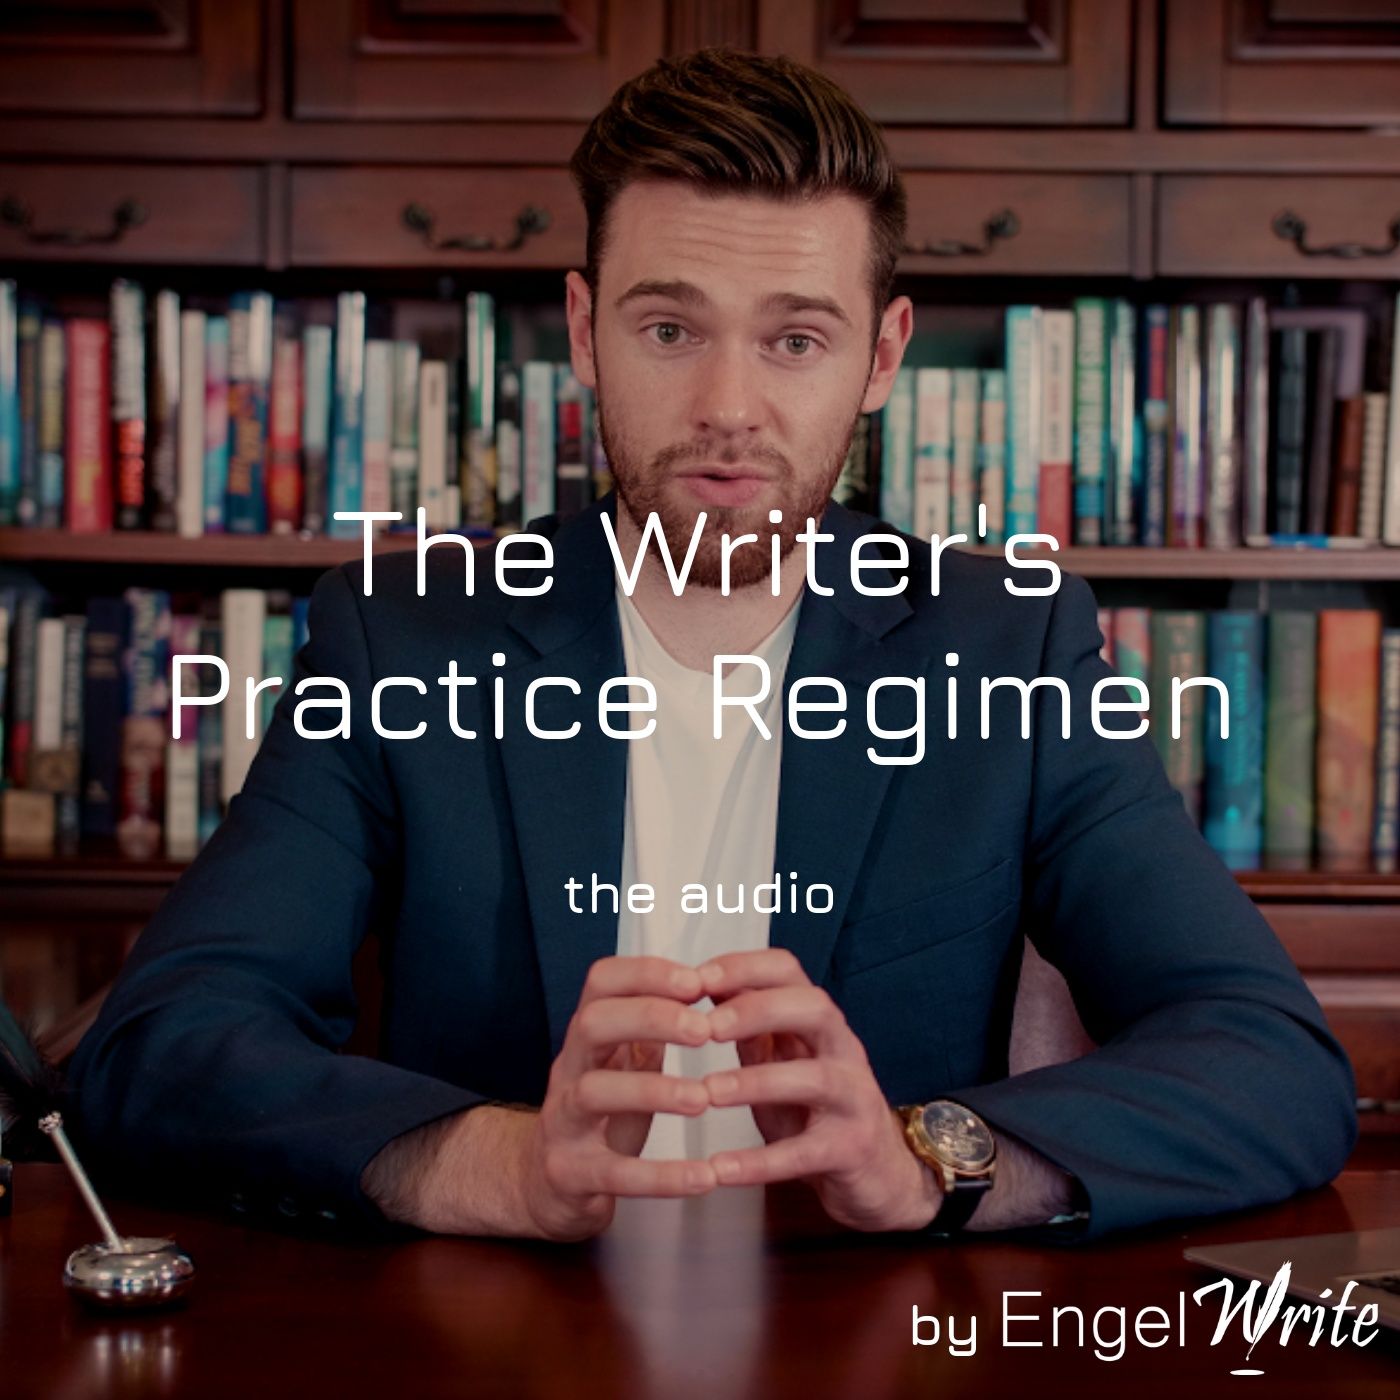 The Writer's Practice Regimen